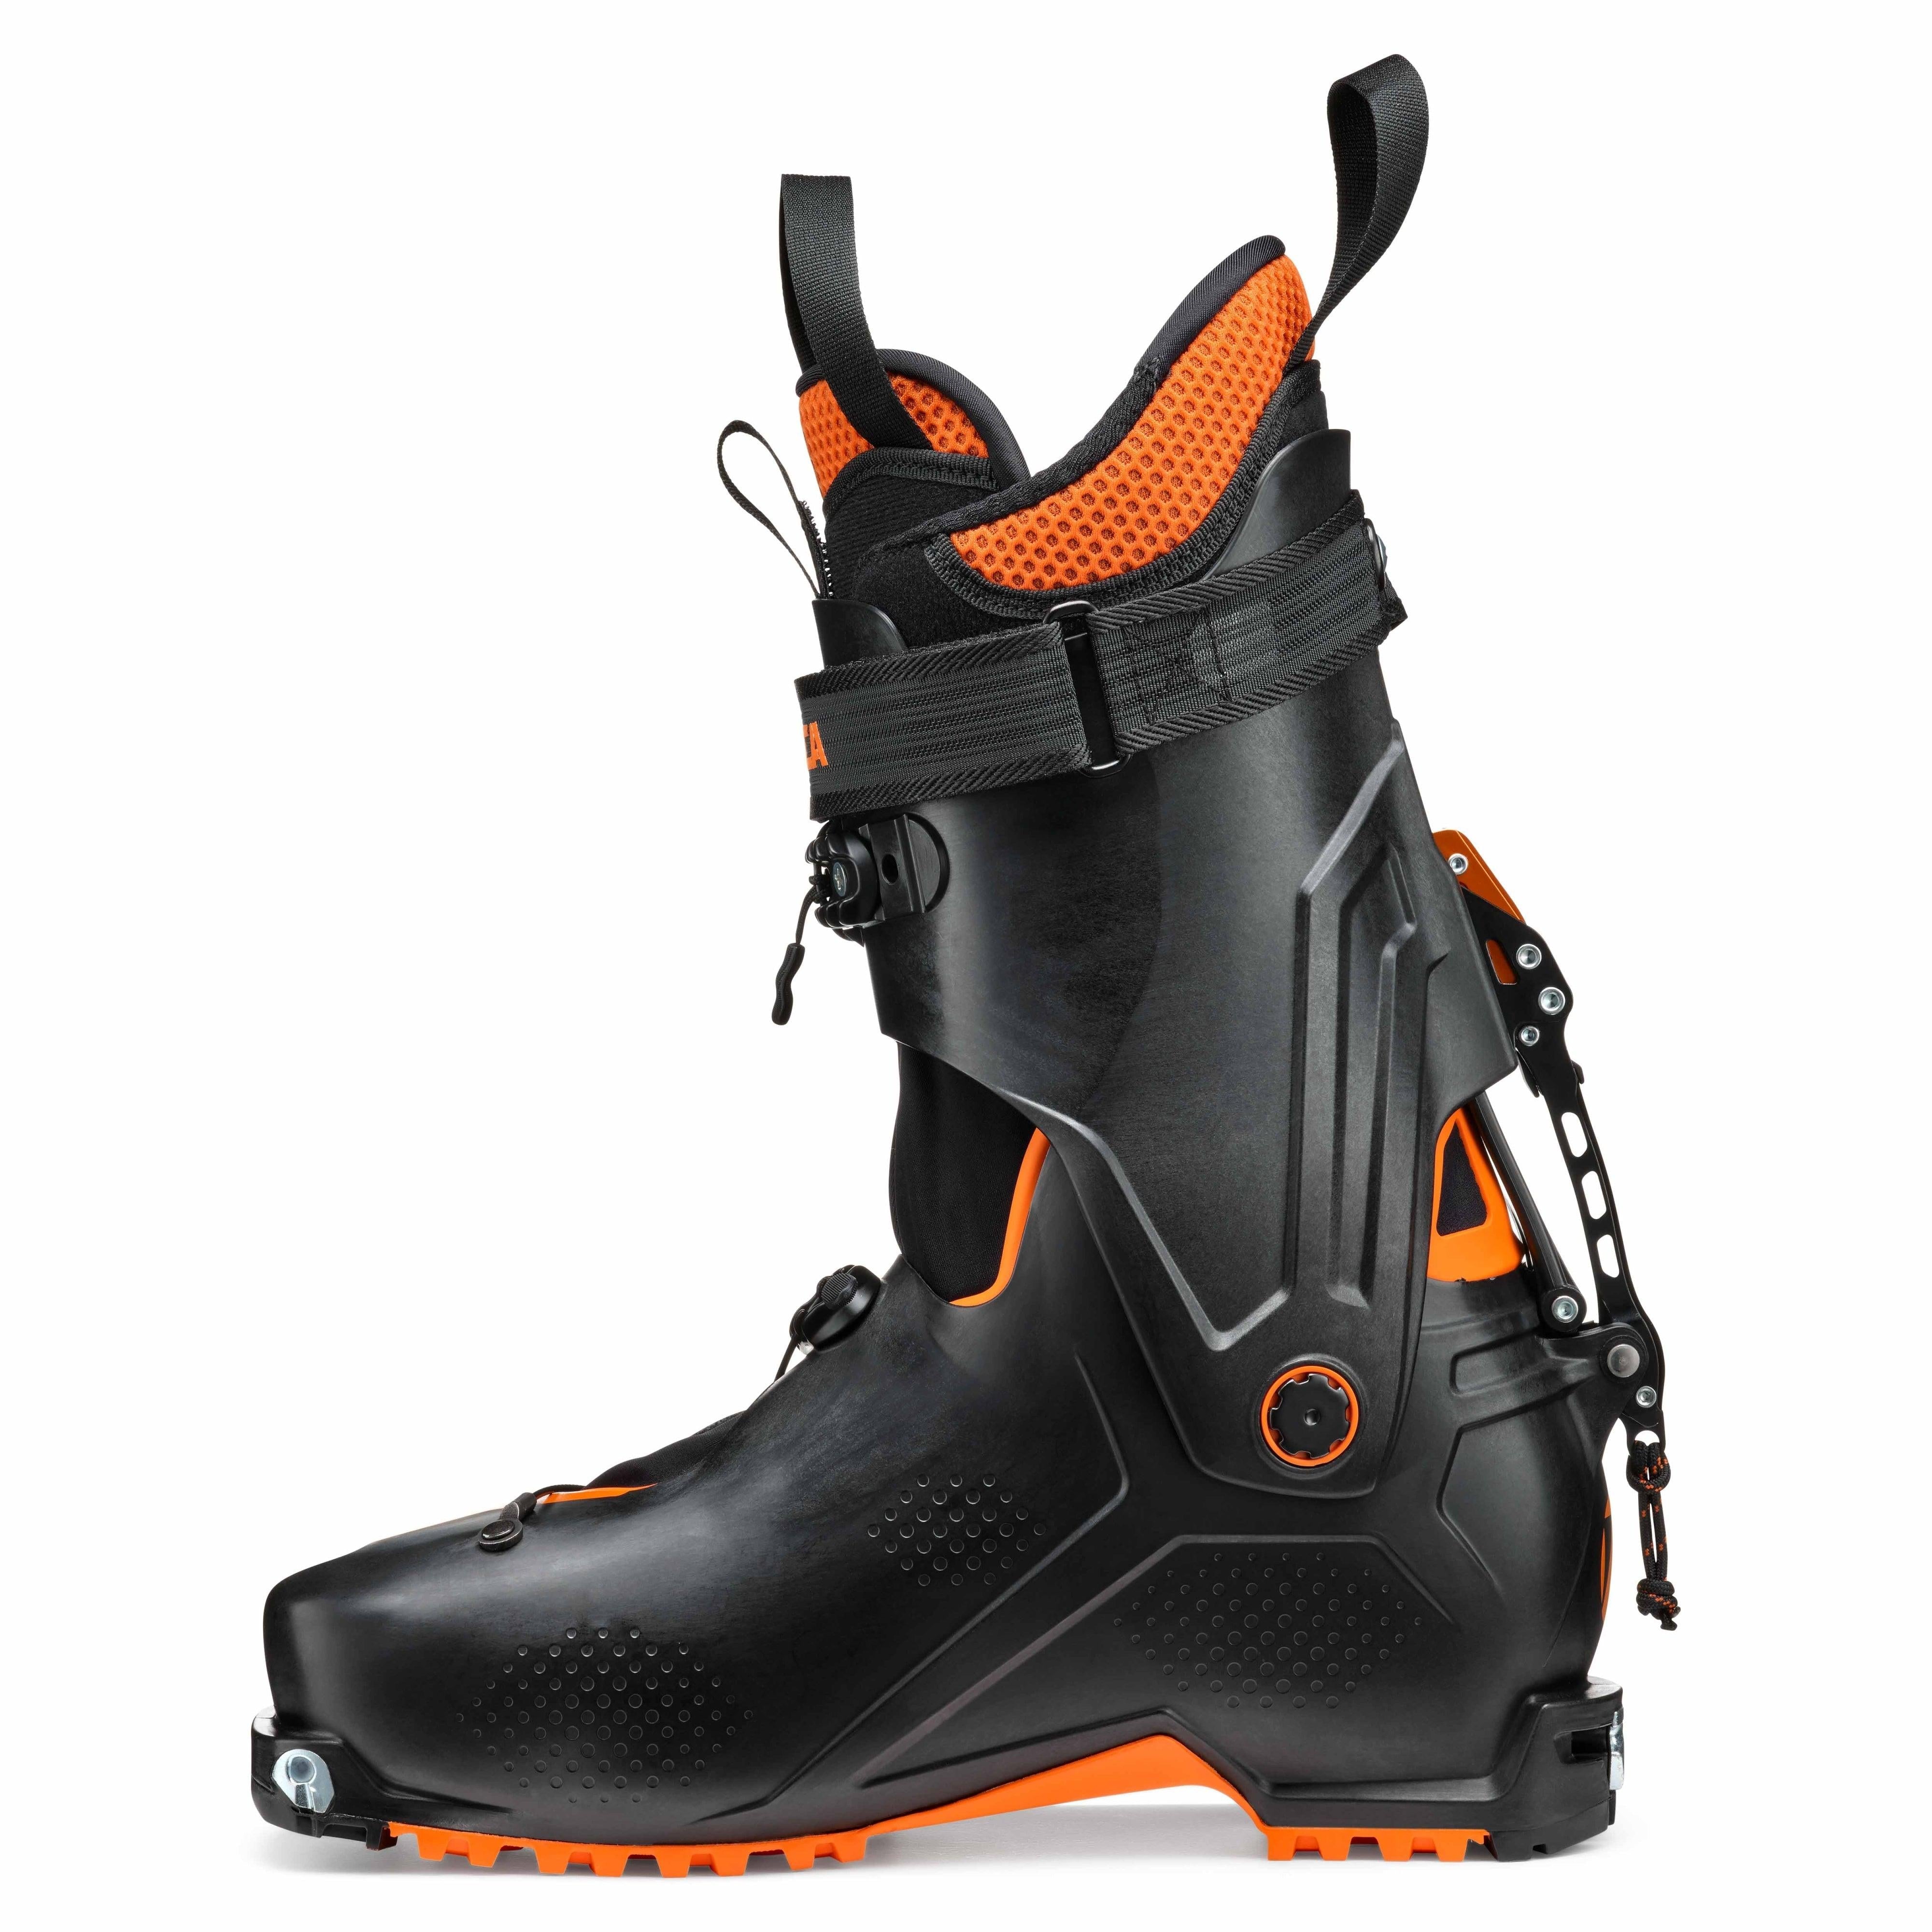 Tecnica Zero G Tour Backcountry Ski Boot 2022 – Ski The Whites